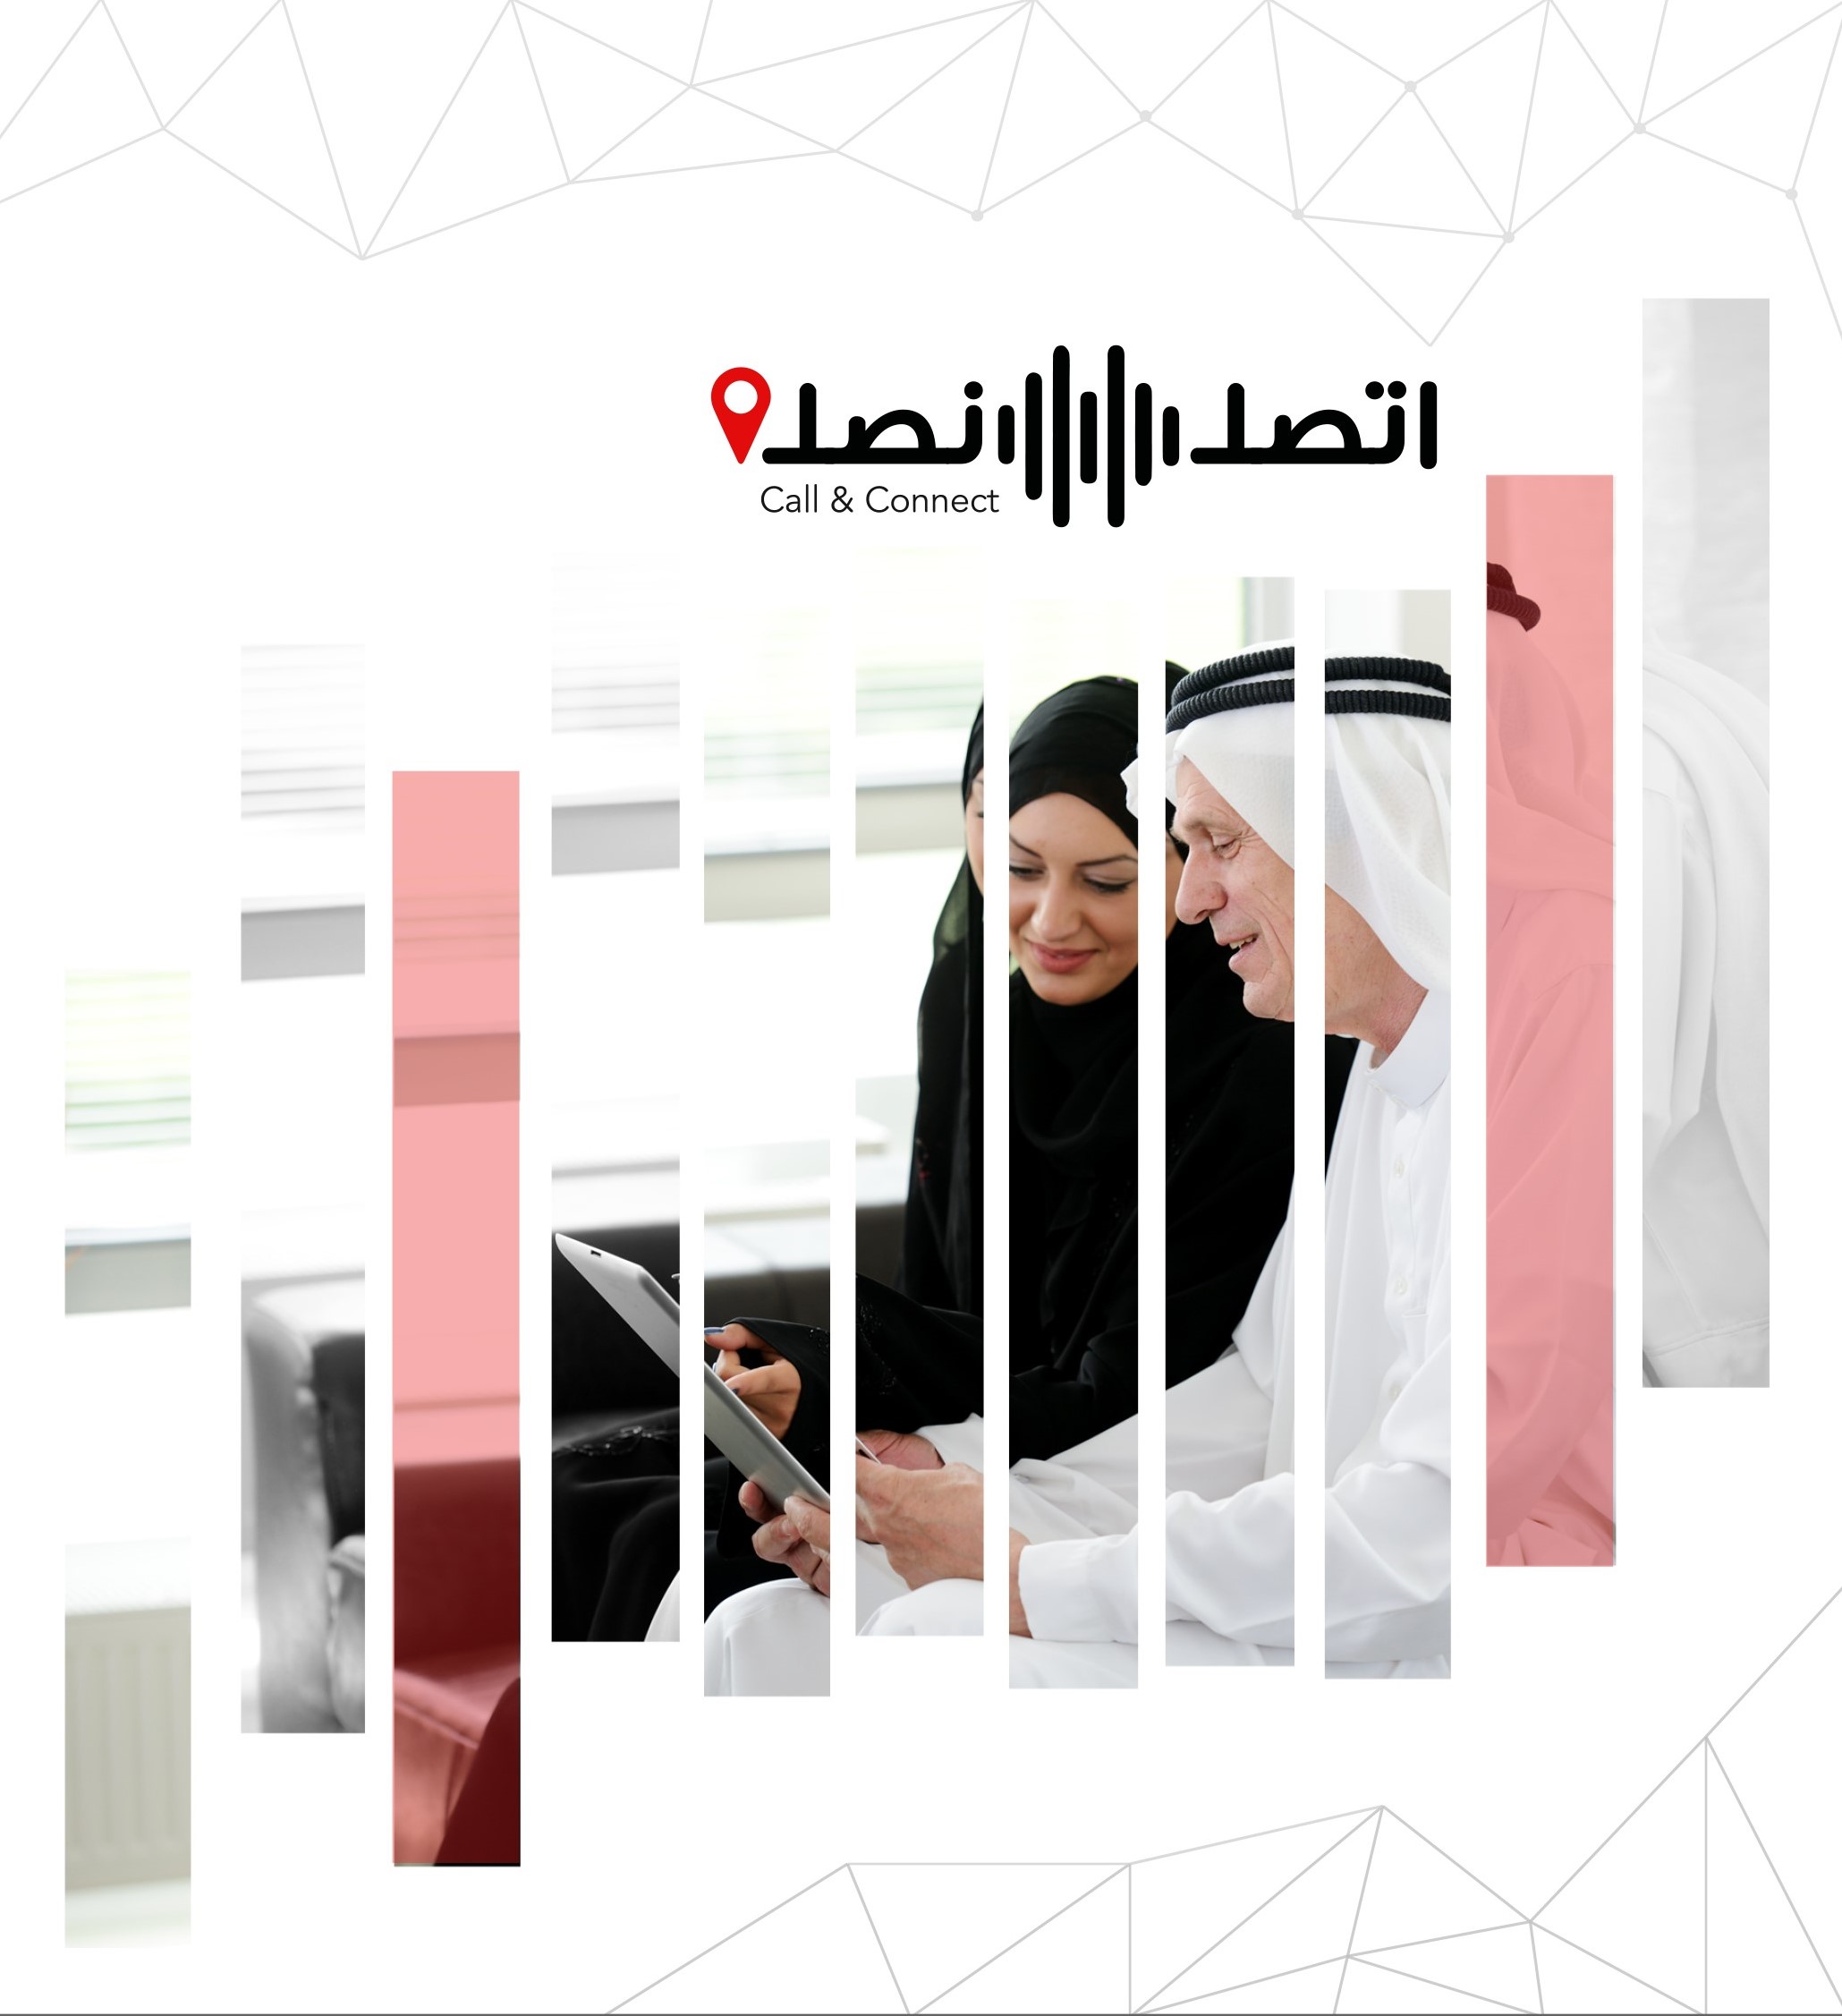 الشؤون القانونية لحكومة دبي تطلق مبادرة "اتصل نصل" لخدمة كبار السن وأصحاب الهمم